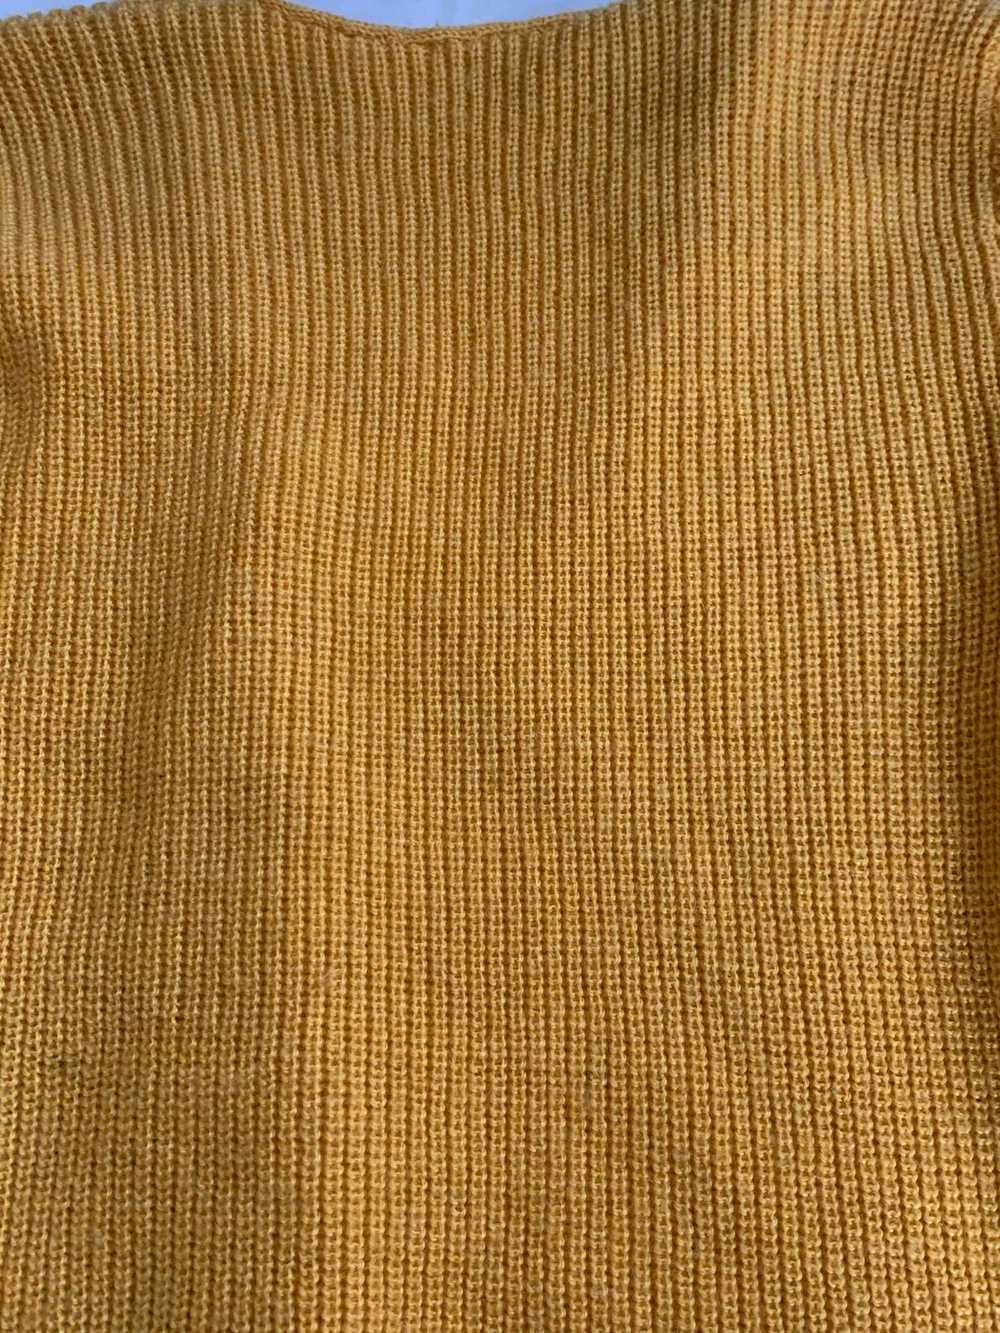 Cardigan en crochet - Cardigan en crochet jaune - image 4